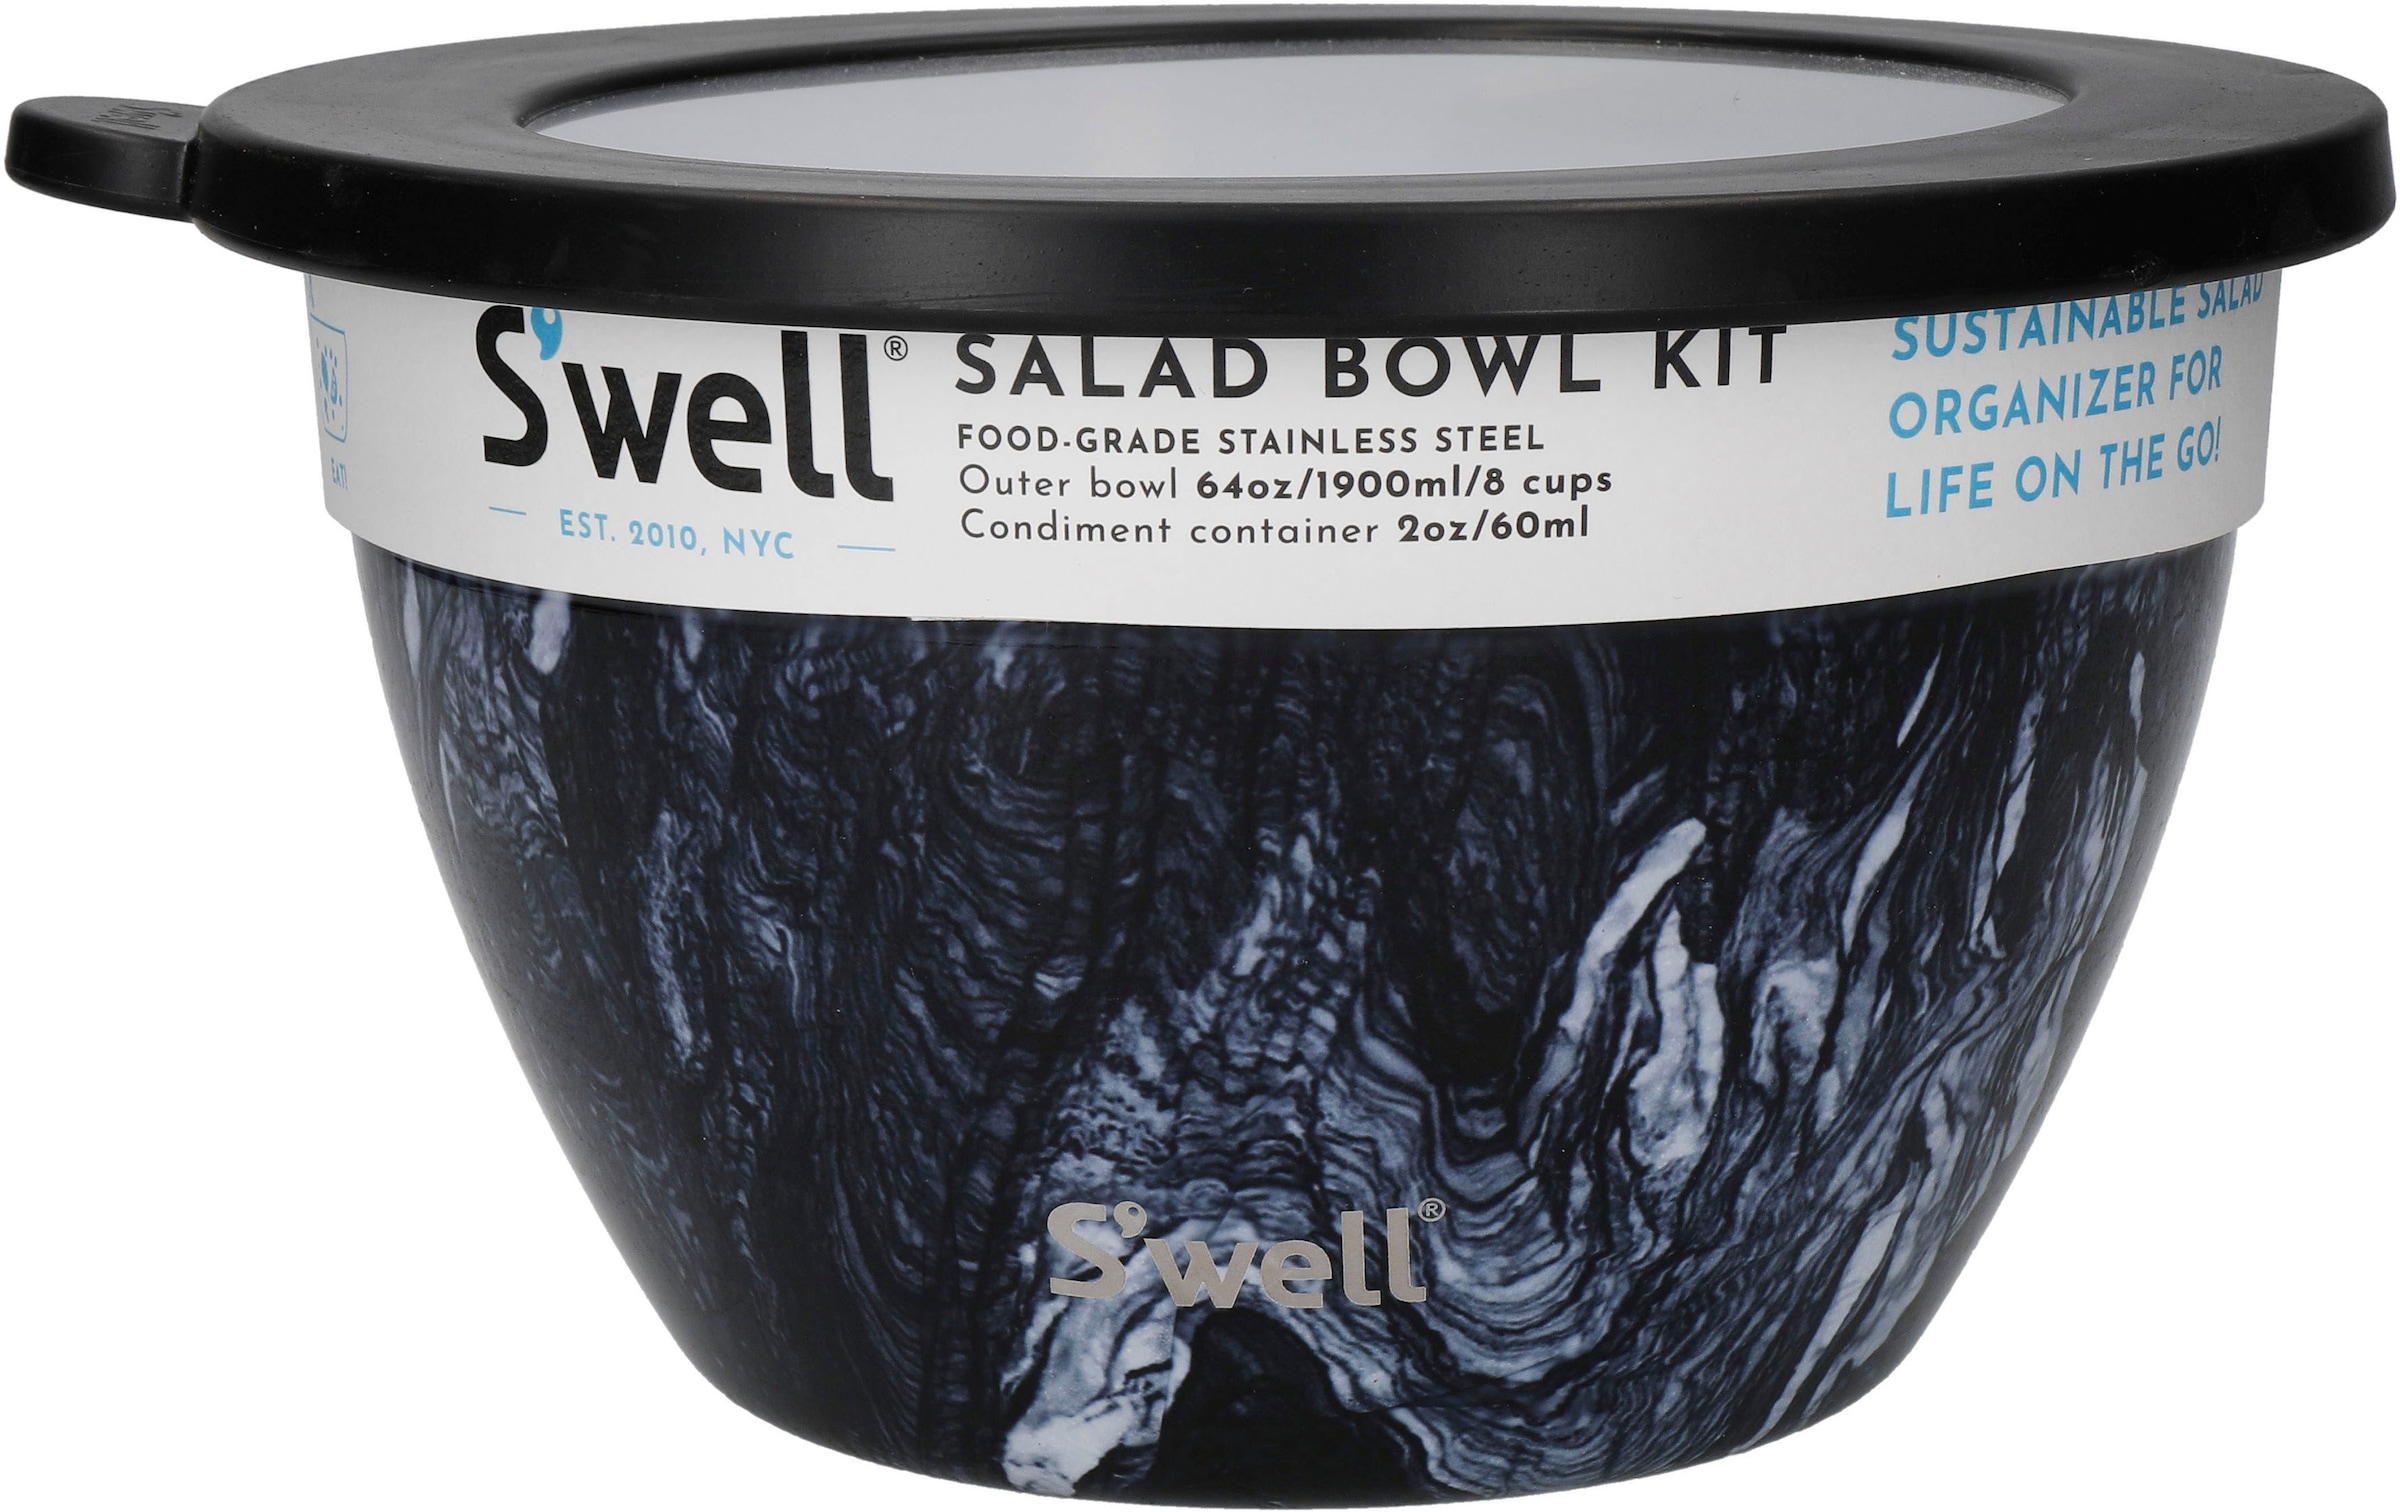 S'well Salatschüssel »S'well Onyx Salad Bowl Kit, 1.9L«, 3 tlg